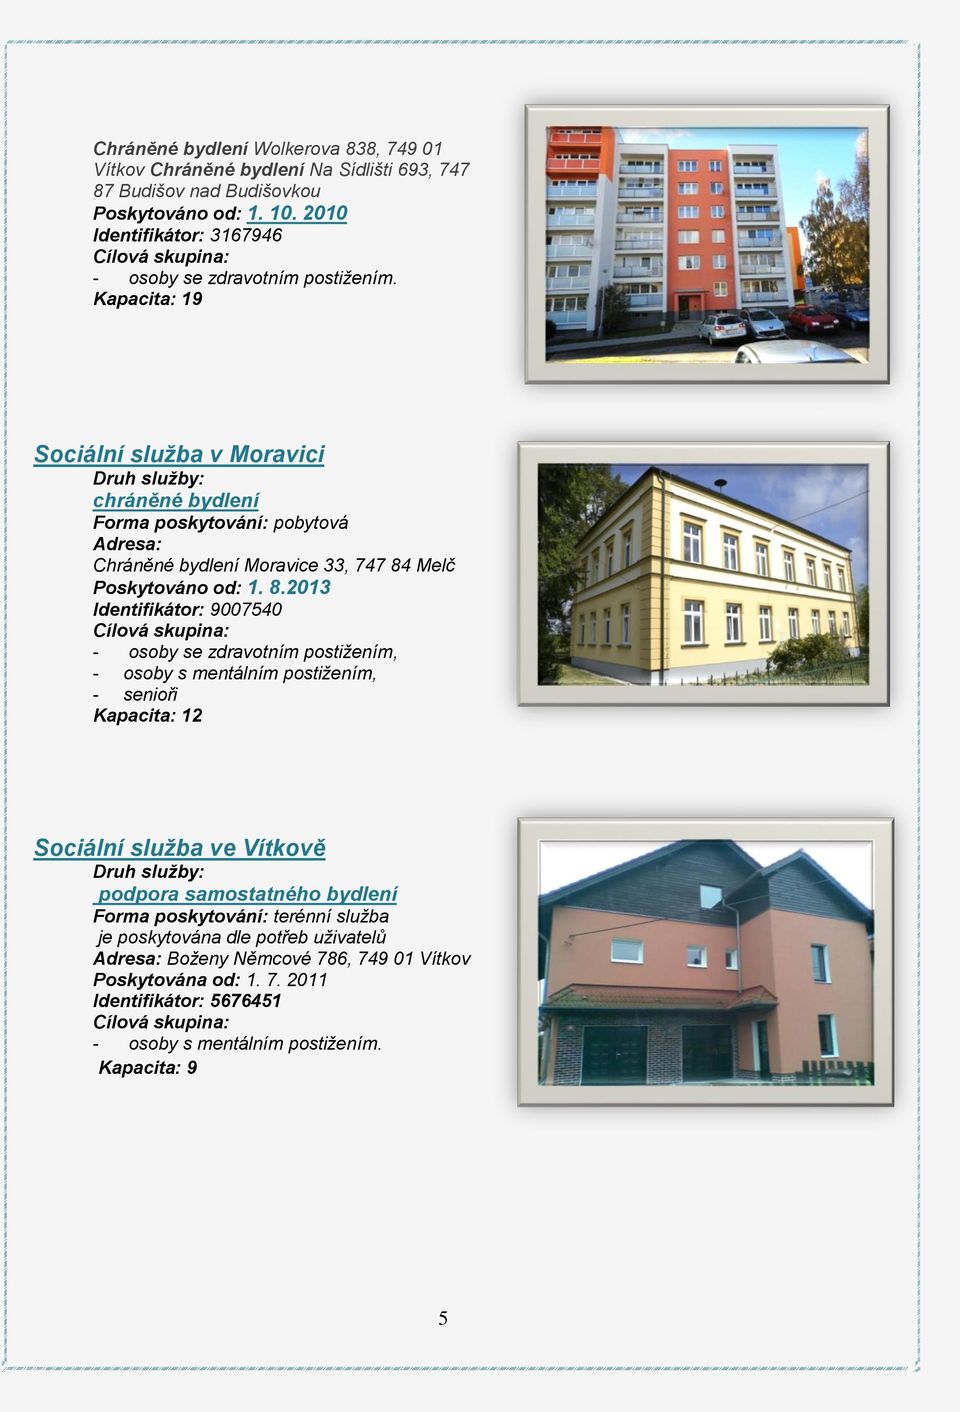 Kapacita: 19 Sociální služba v Moravici Druh služby: chráněné bydlení Forma poskytování: pobytová Adresa: Chráněné bydlení Moravice 33, 747 84